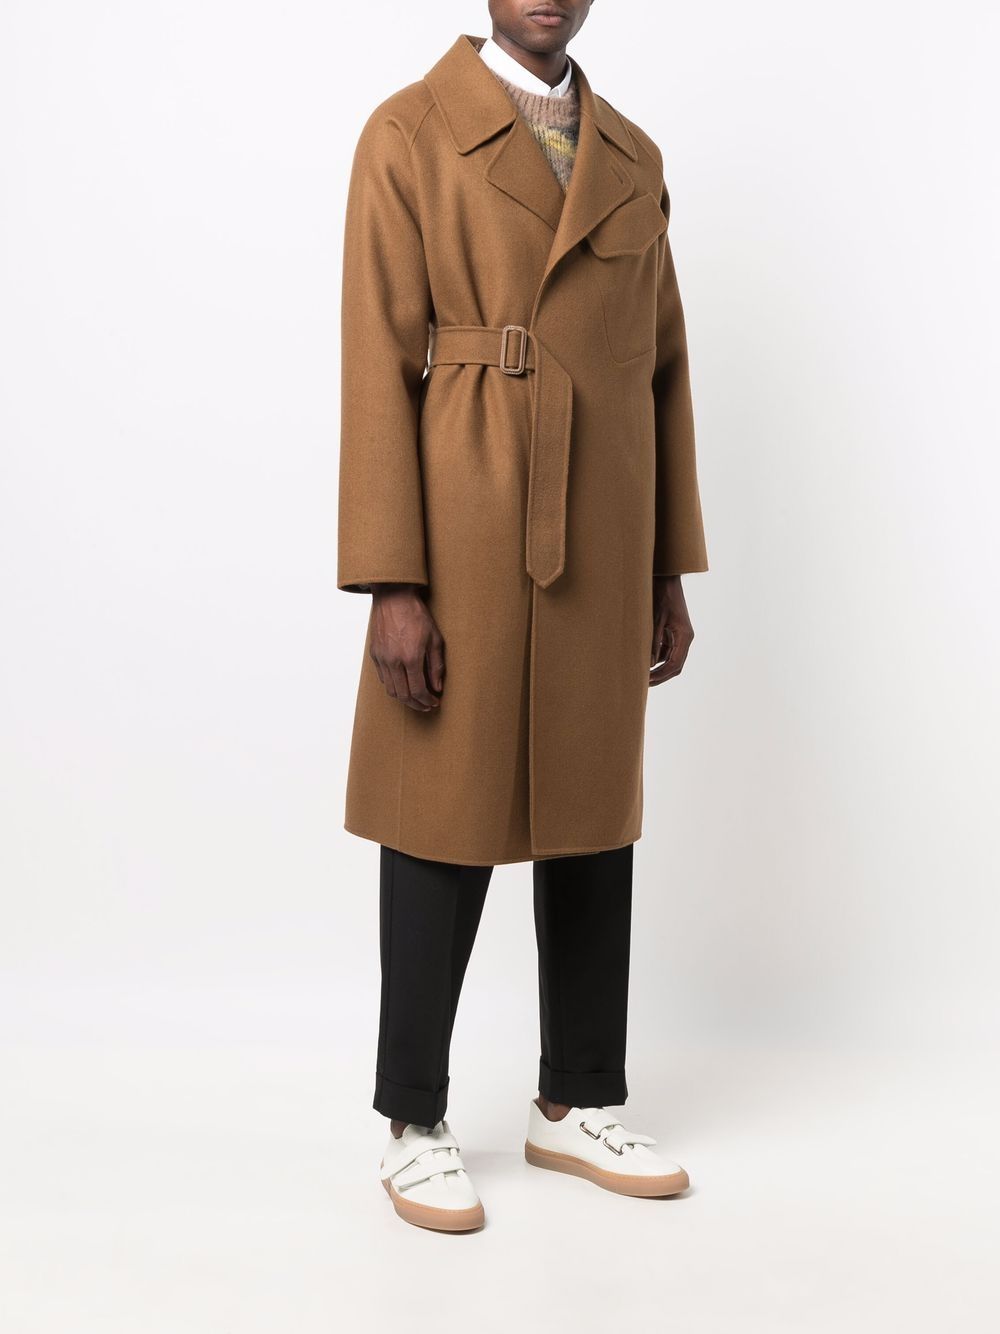 фото Mackintosh пальто laggan с поясом